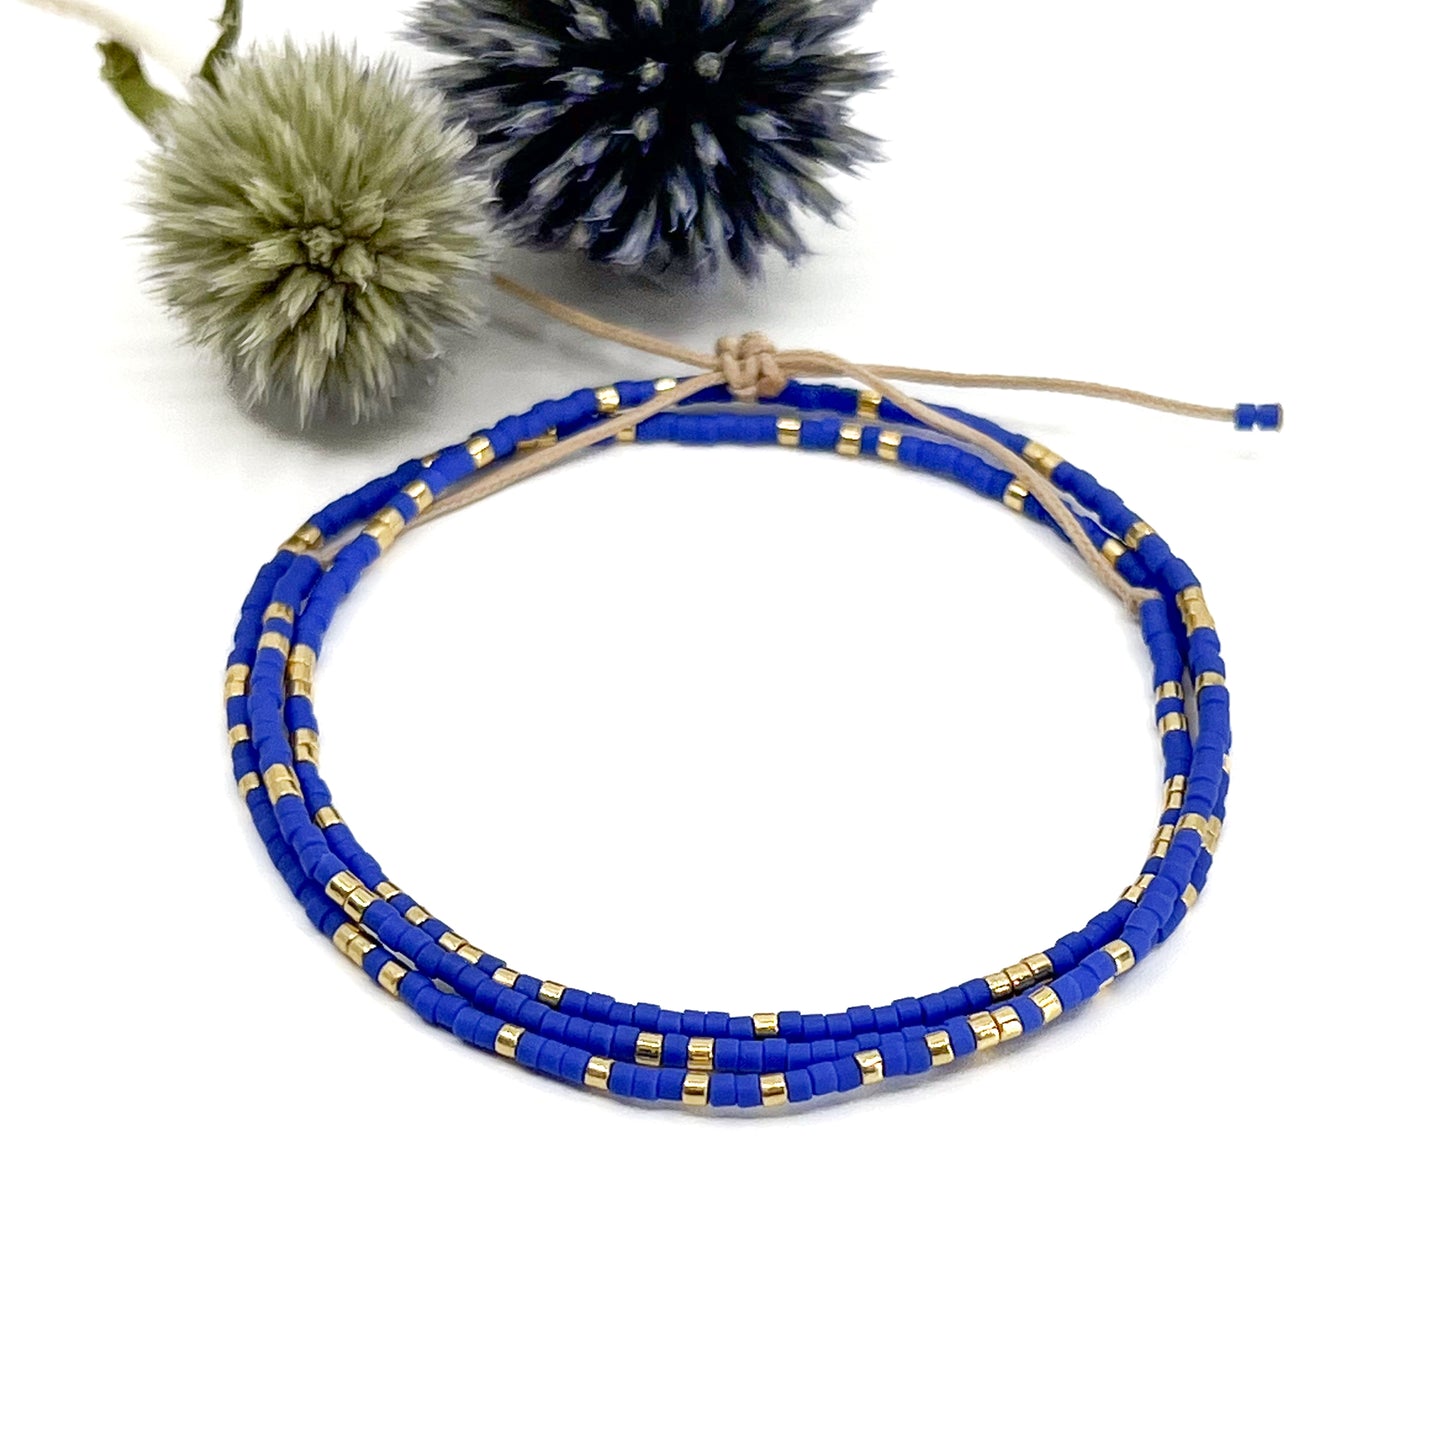 Bracelet ajustable en pierre de rocaille bleu des îles grecques et or. Trois tours de poignet